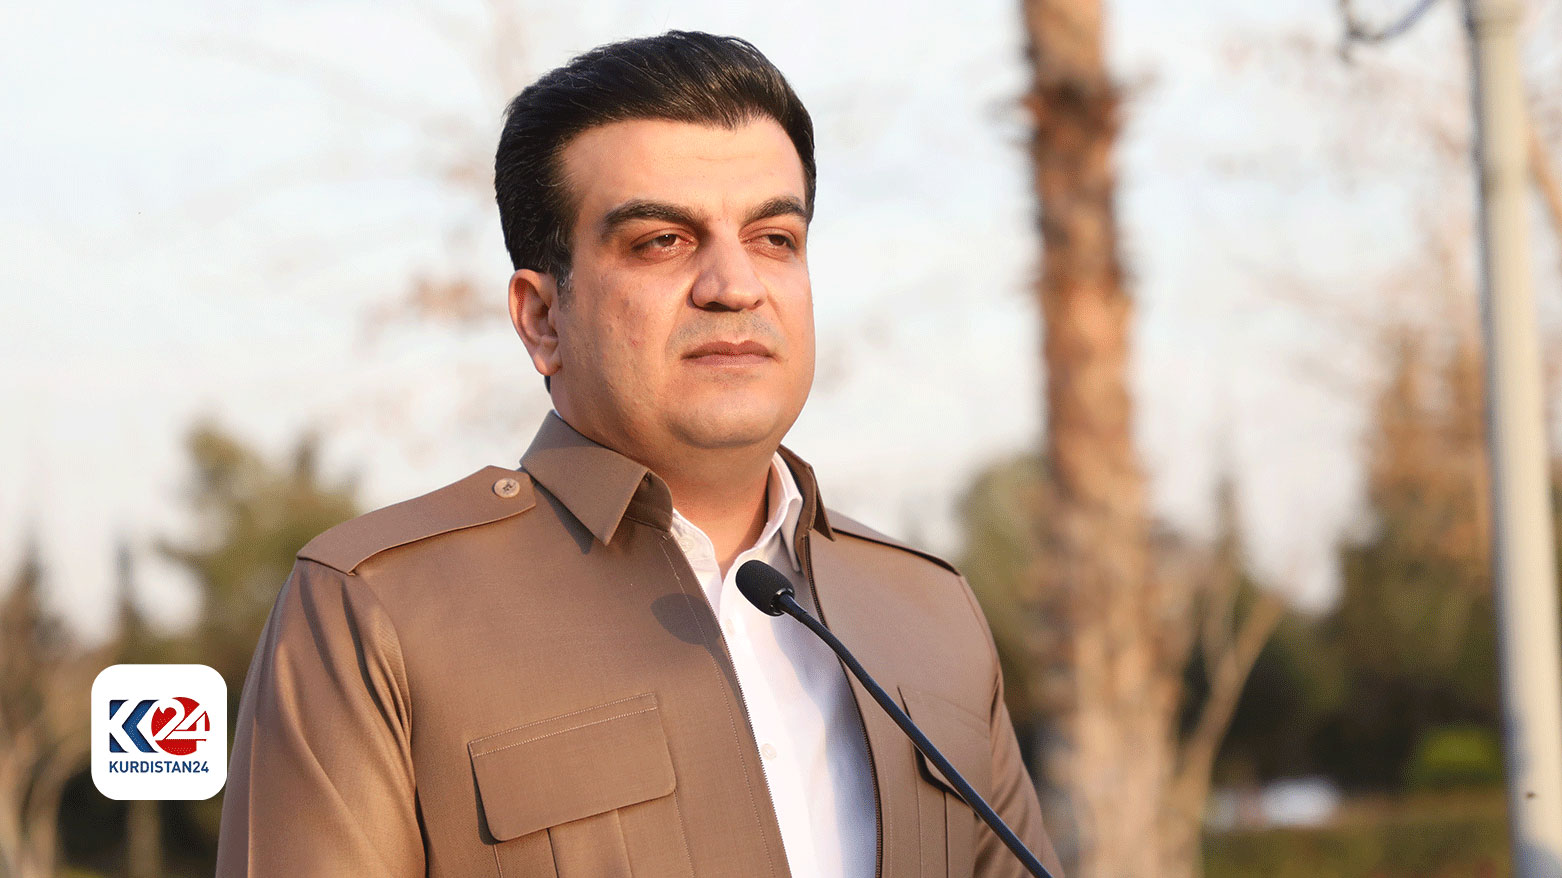 متحدث حكومة إقليم كوردستان: لا توجد محكمة دستورية في العراق وقراراتها غير قانونية وغير دستورية